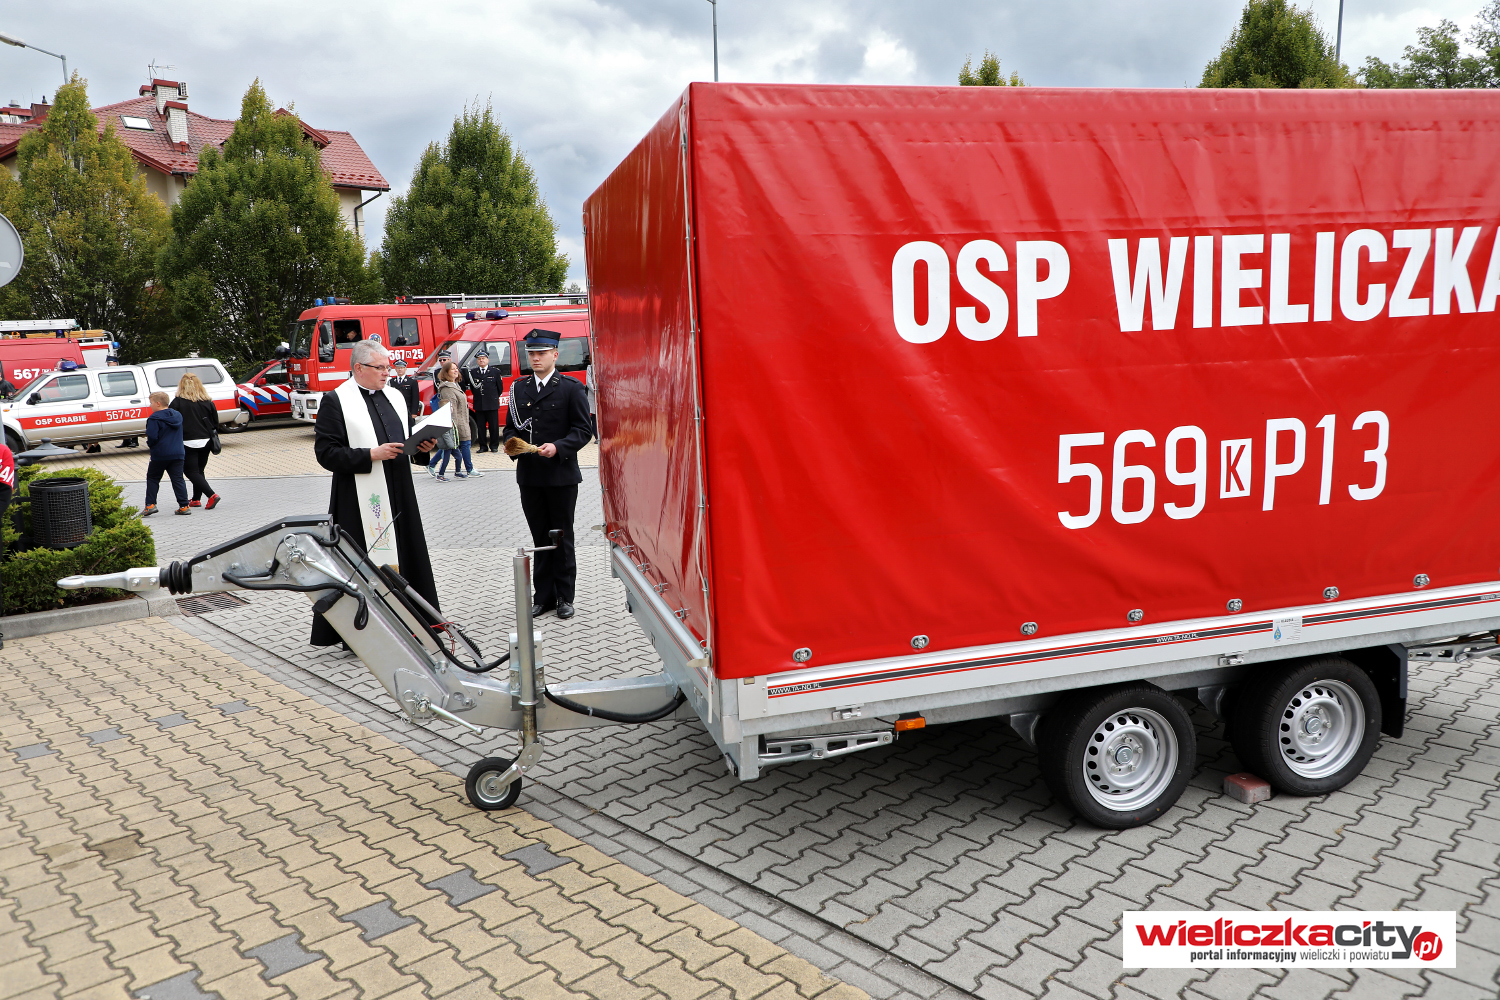 Poświęcenie strażackiej przyczepy. Na czerwonej plandece napis OSP Wieliczka